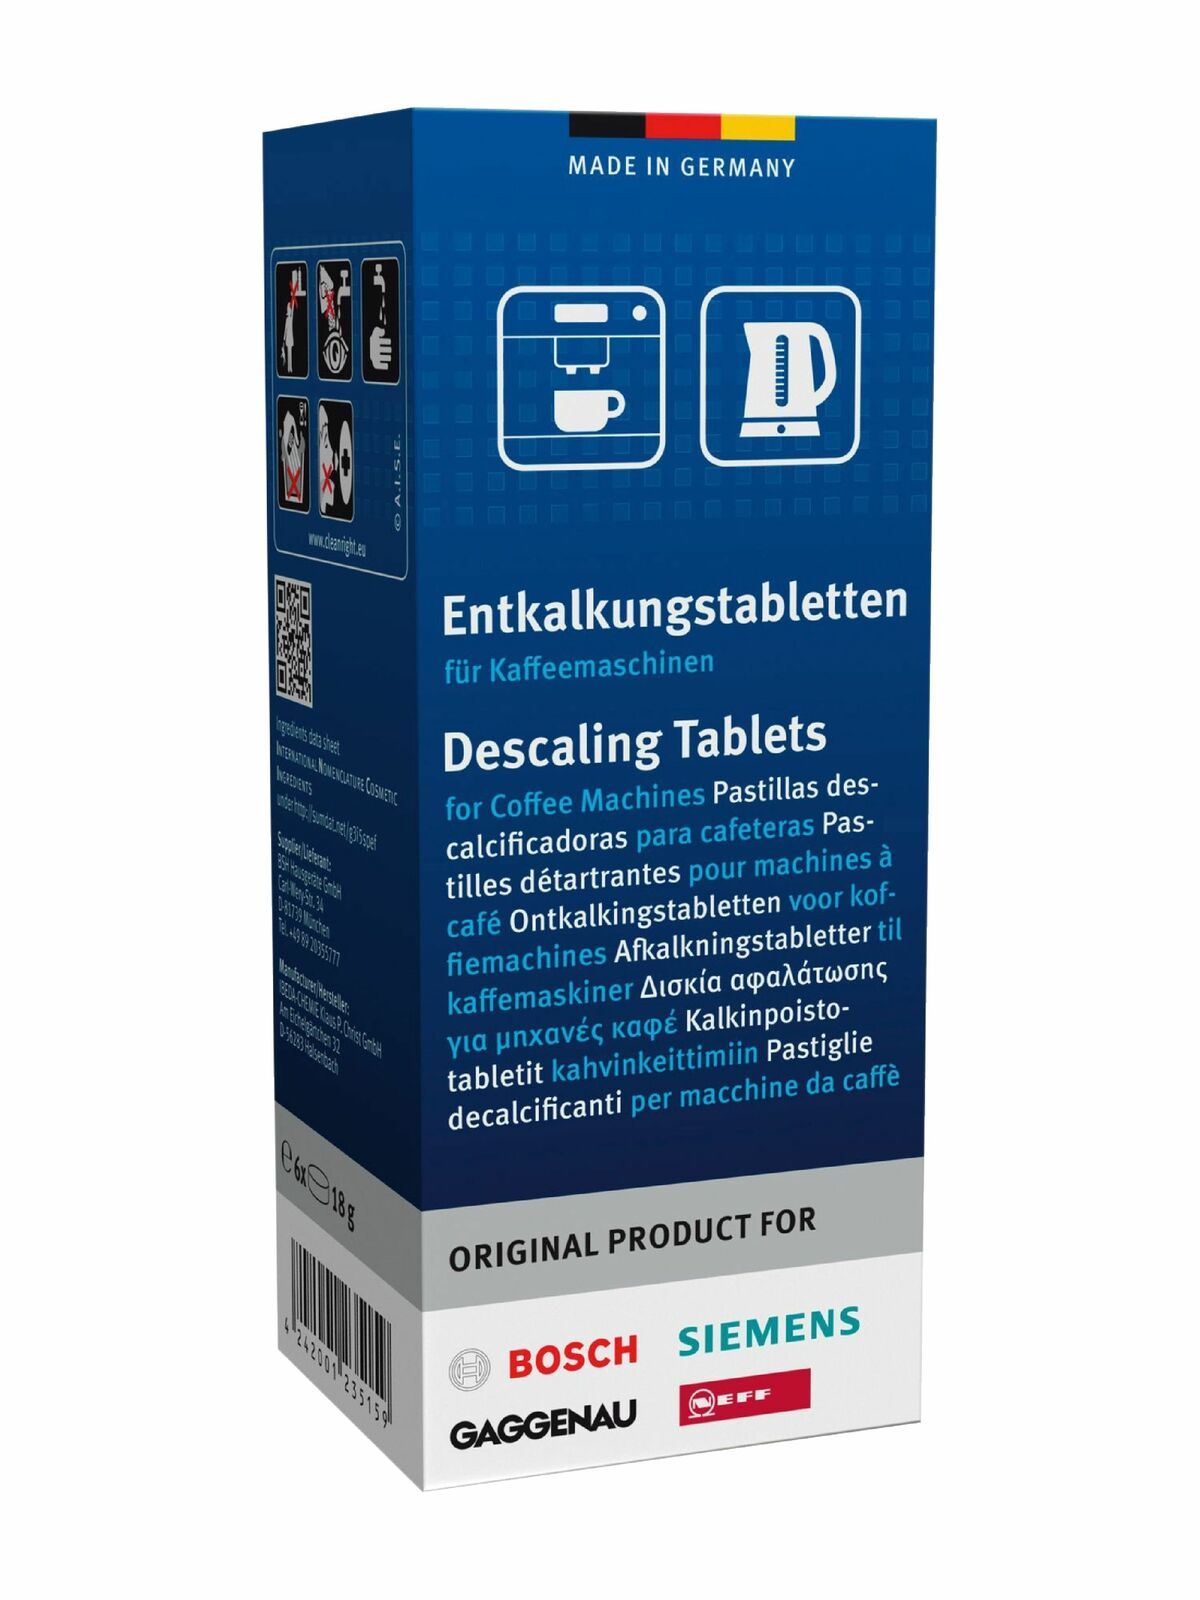 Bosch Original Tassimo Descaling Tablets (1 Box of 6 Tablets)